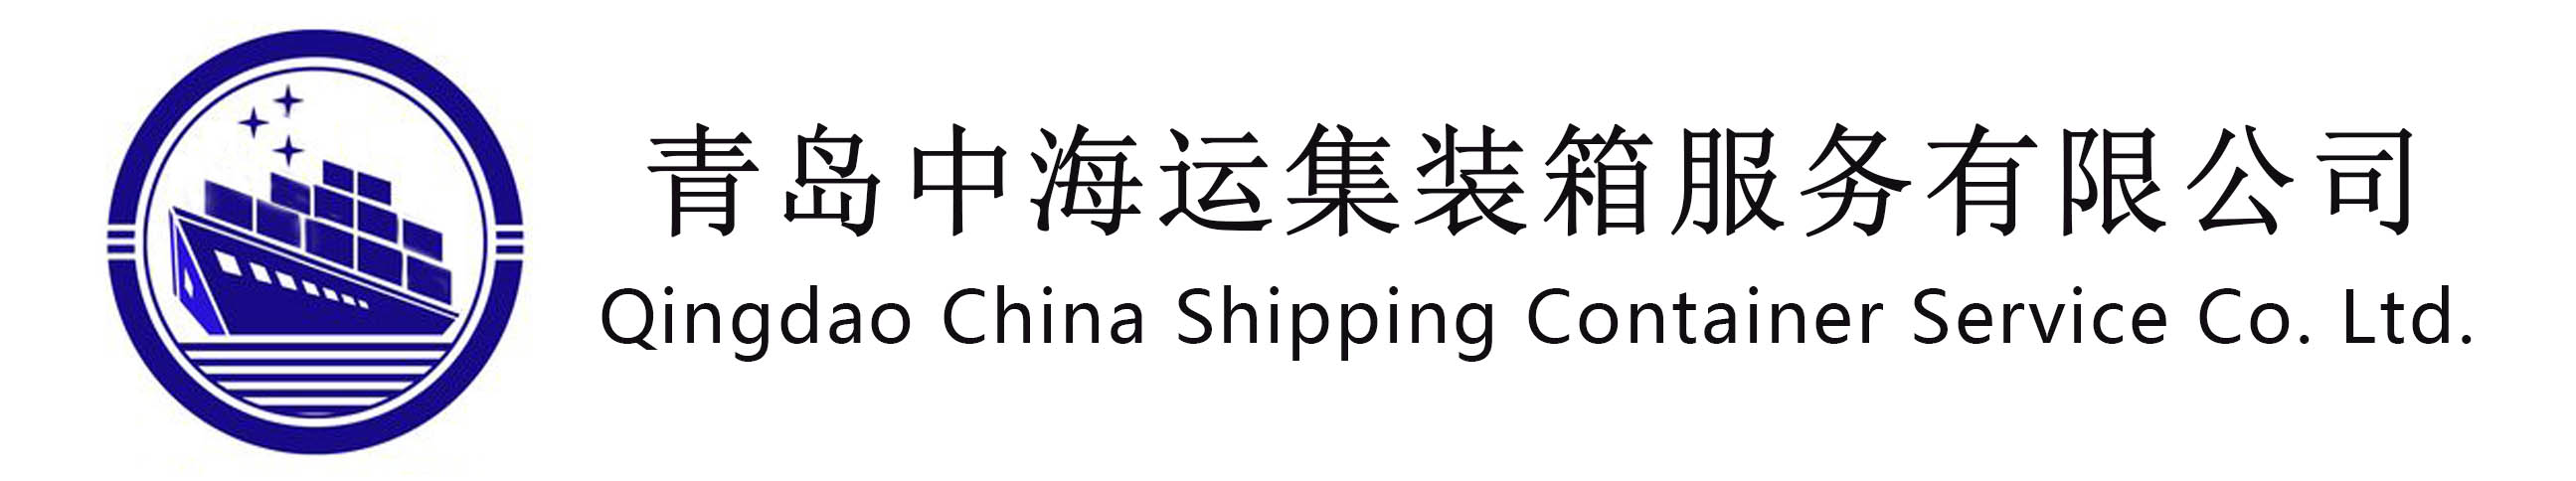 青岛中海运集装箱服务有限公司